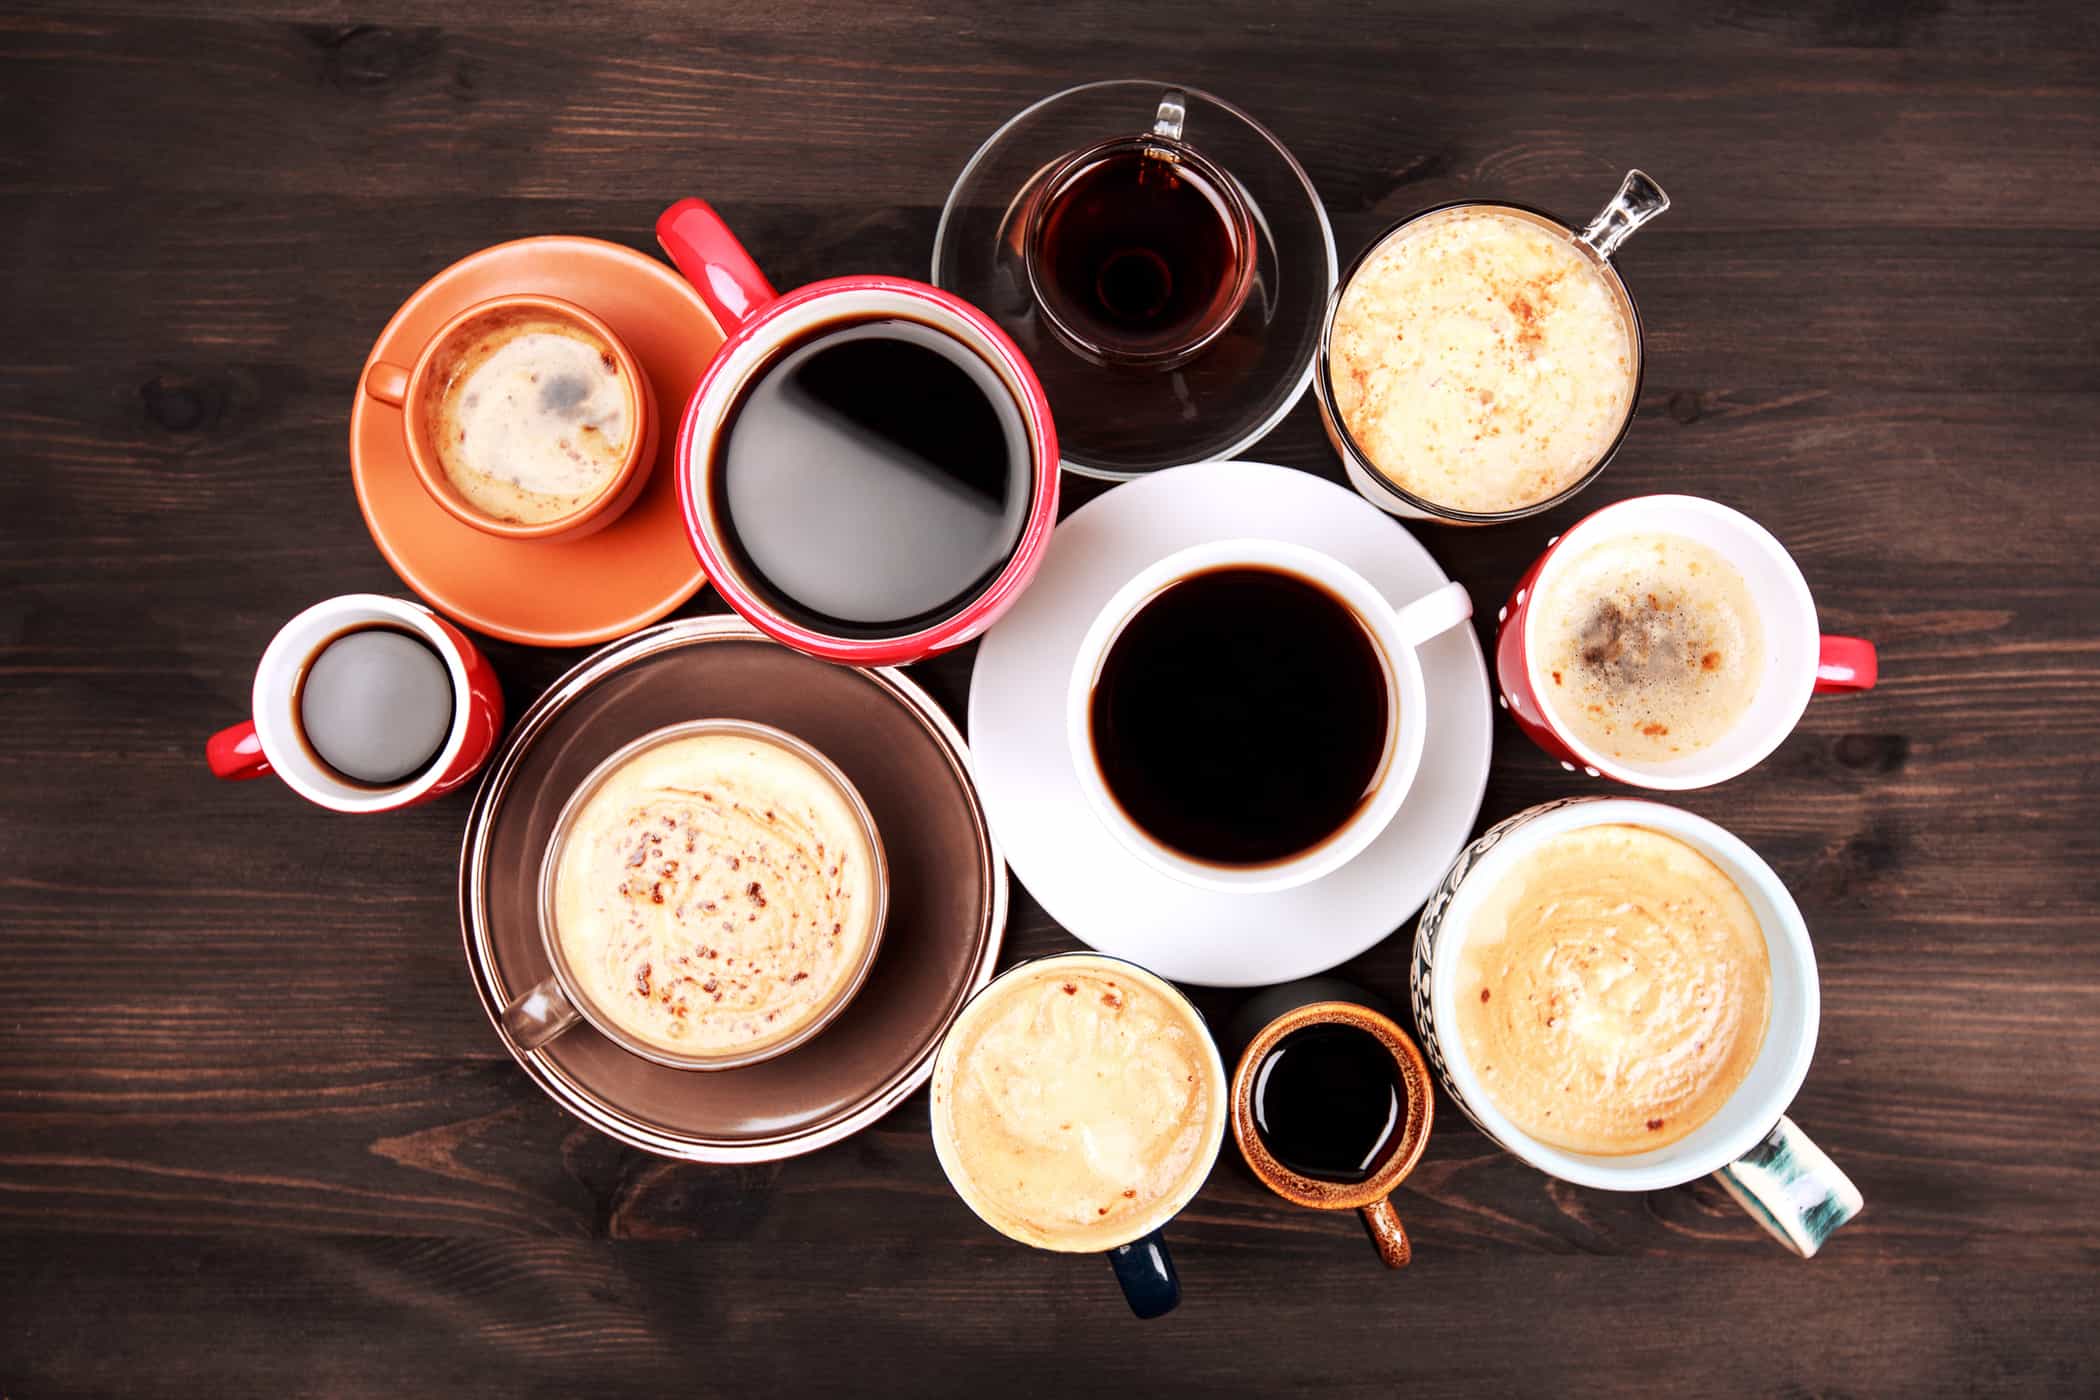 블랙커피가 마음에 들지 않으세요? 설탕 없이 커피를 더 맛있게 만드는 8가지 방법